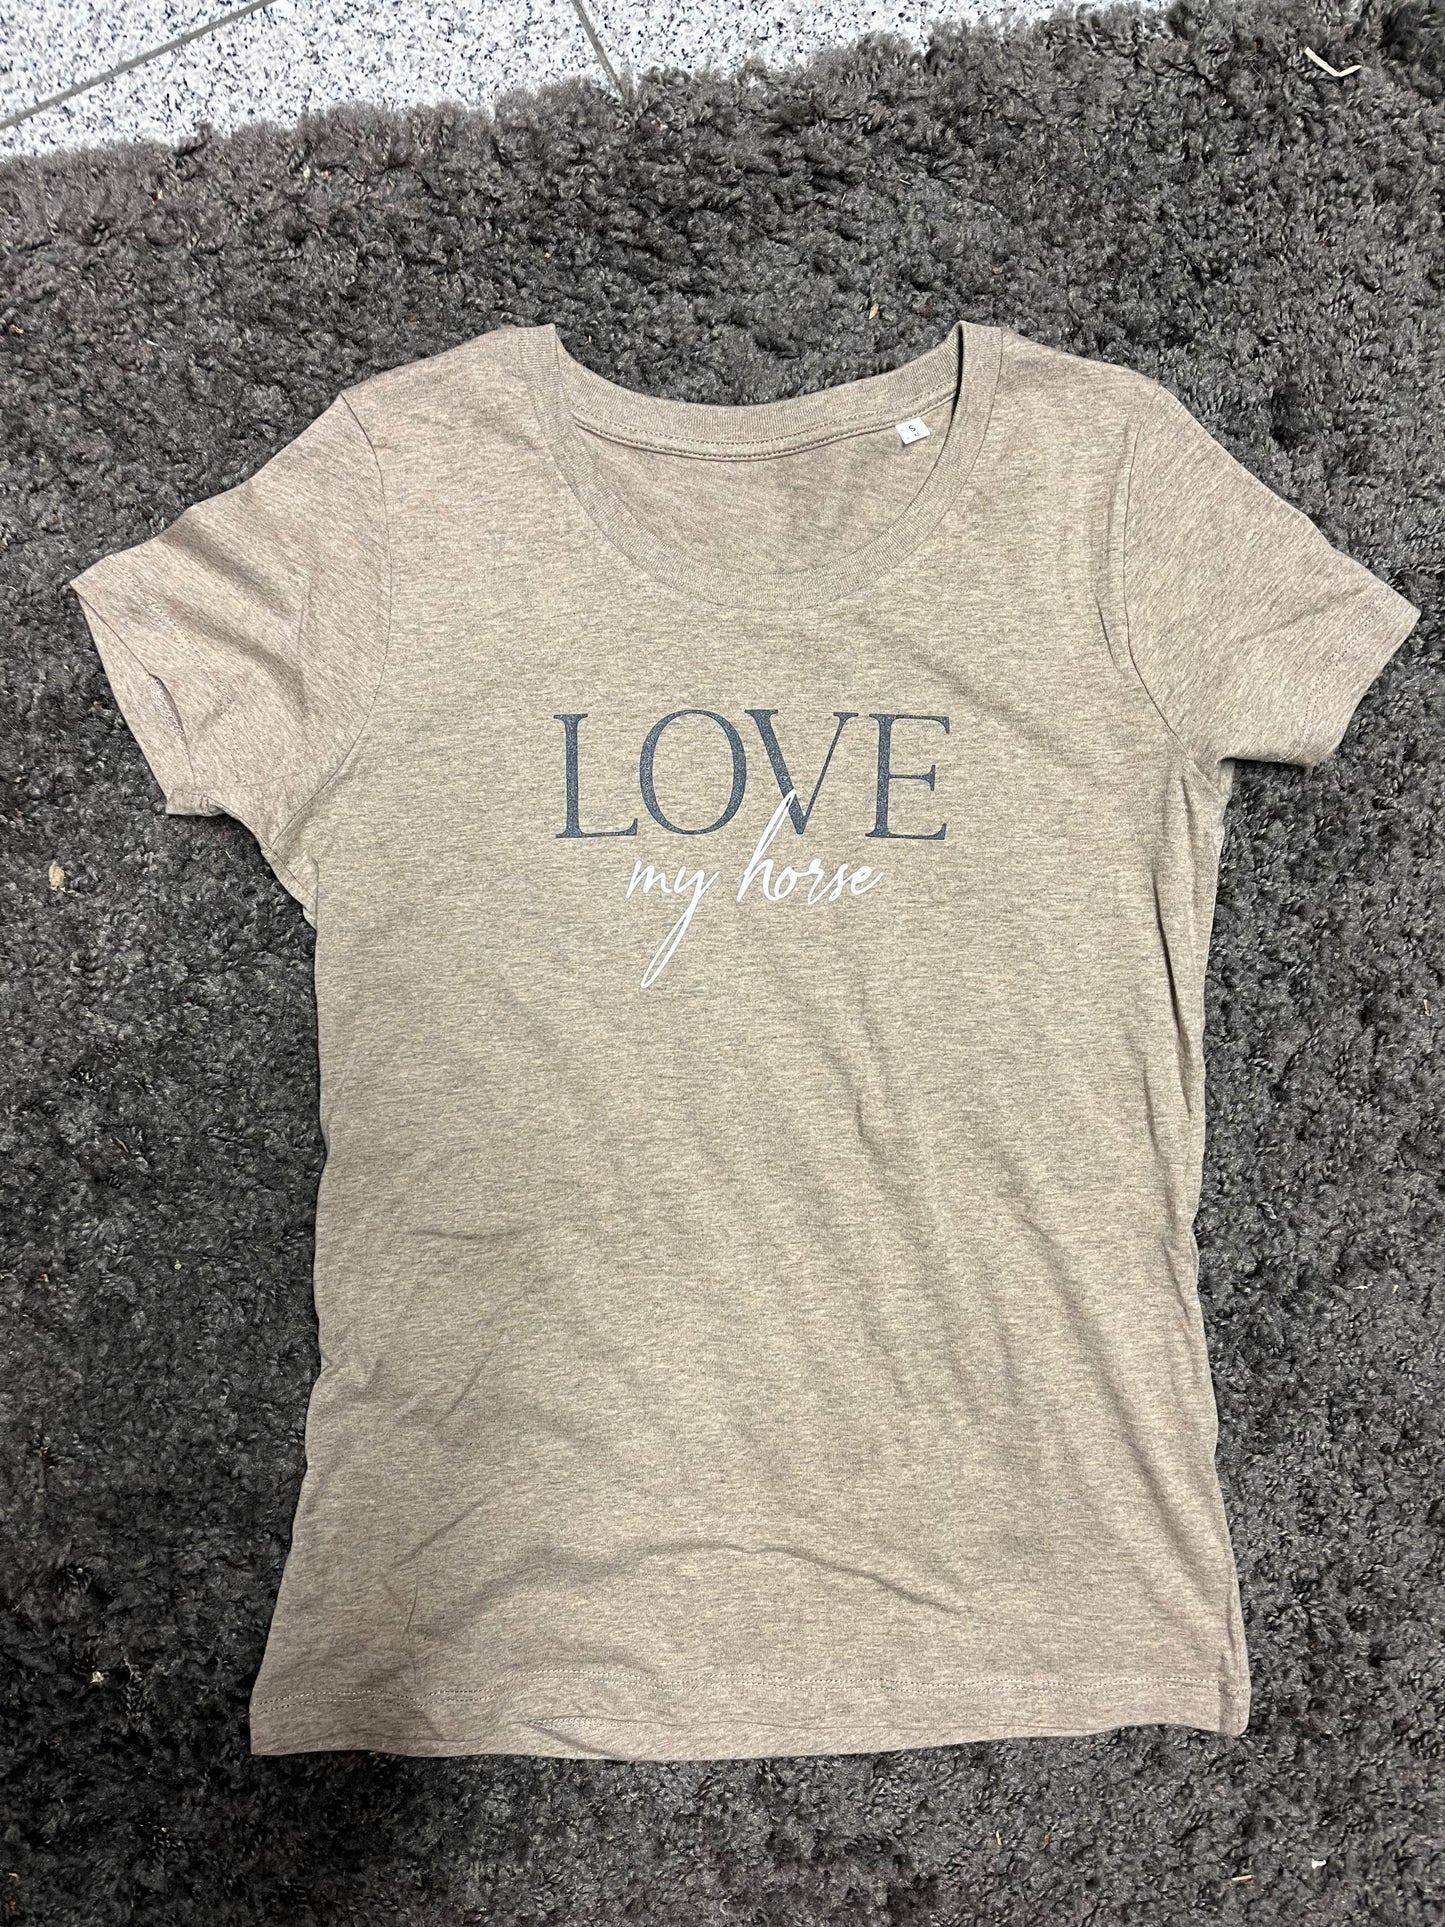 Damen-Shirt "Love my horse" sand